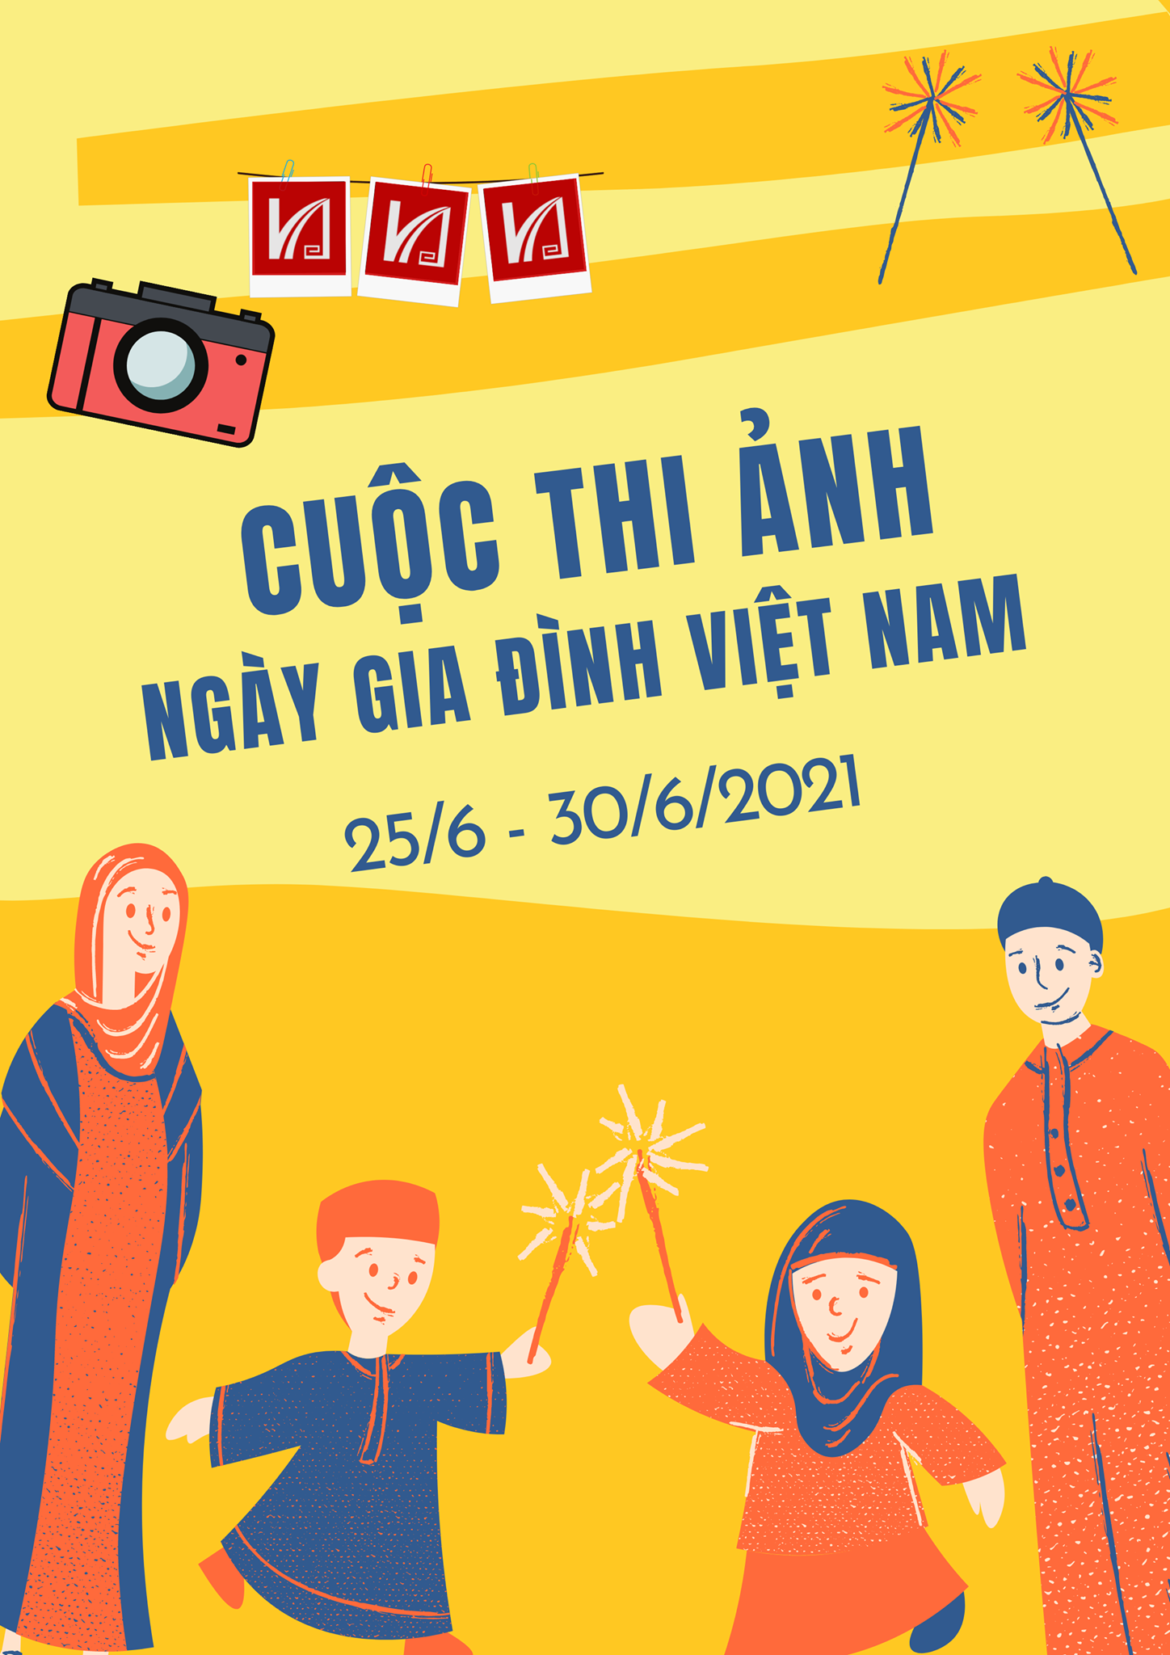 Cuộc thi ảnh ngày Gia đình Việt Nam